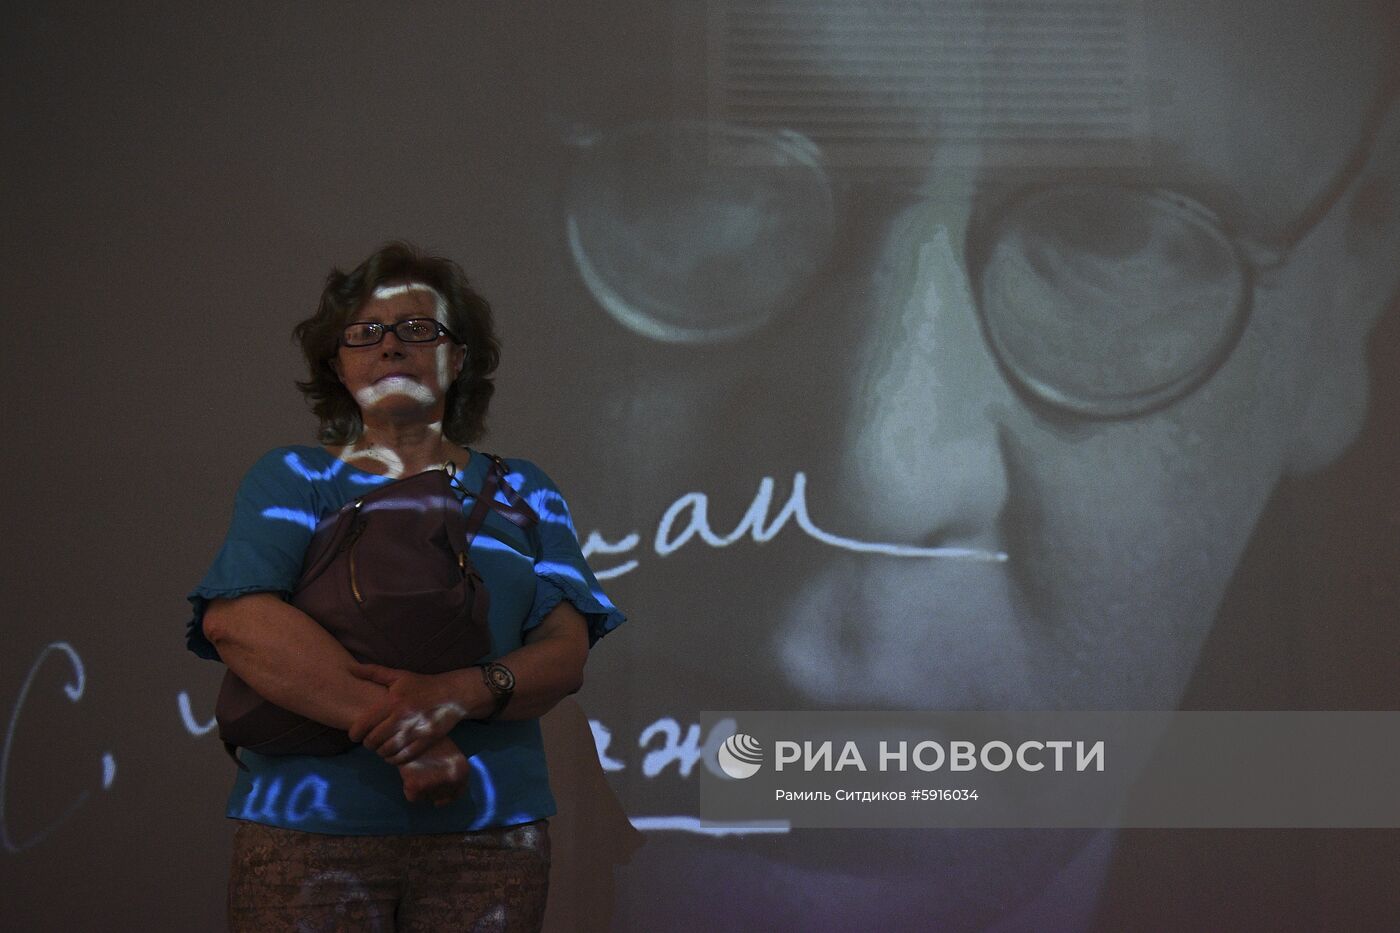 Открытие нового здания Государственного музея истории российской литературы имени В. И. Даля